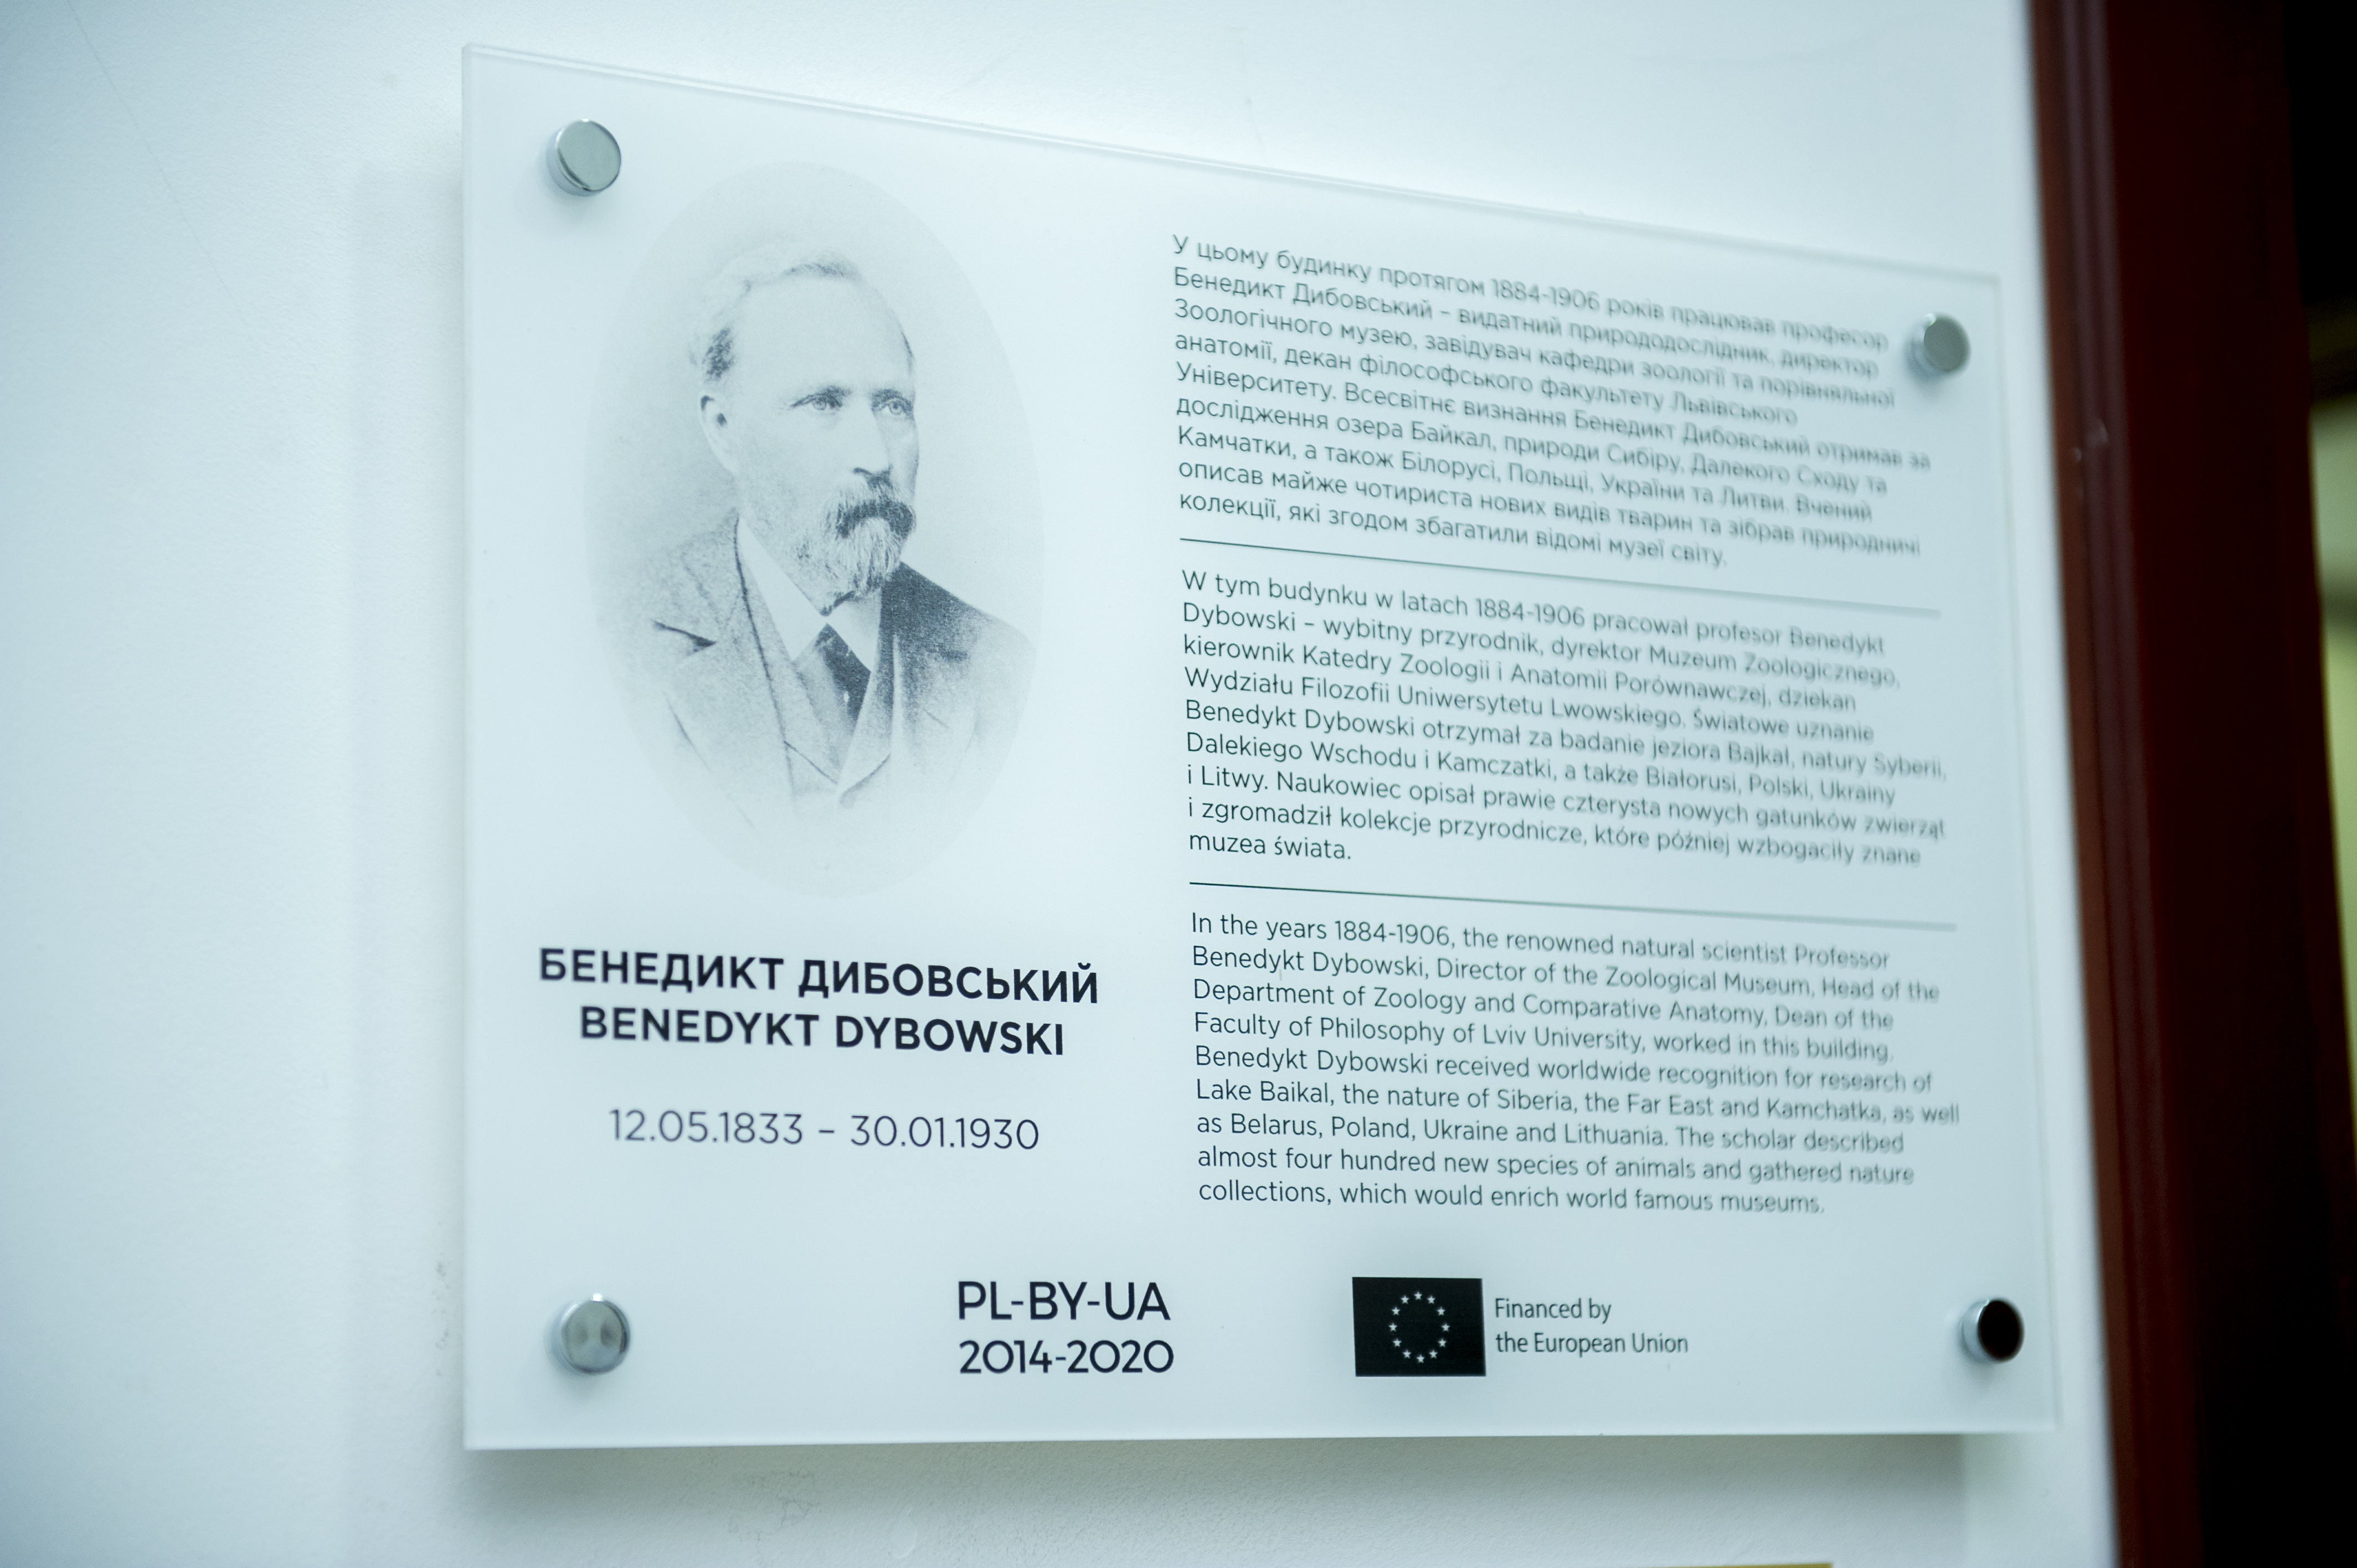 Профессор Бенедикт Дыбовский - выдающийся исследователь совместного природного наследия Польши, Беларуси и Украины